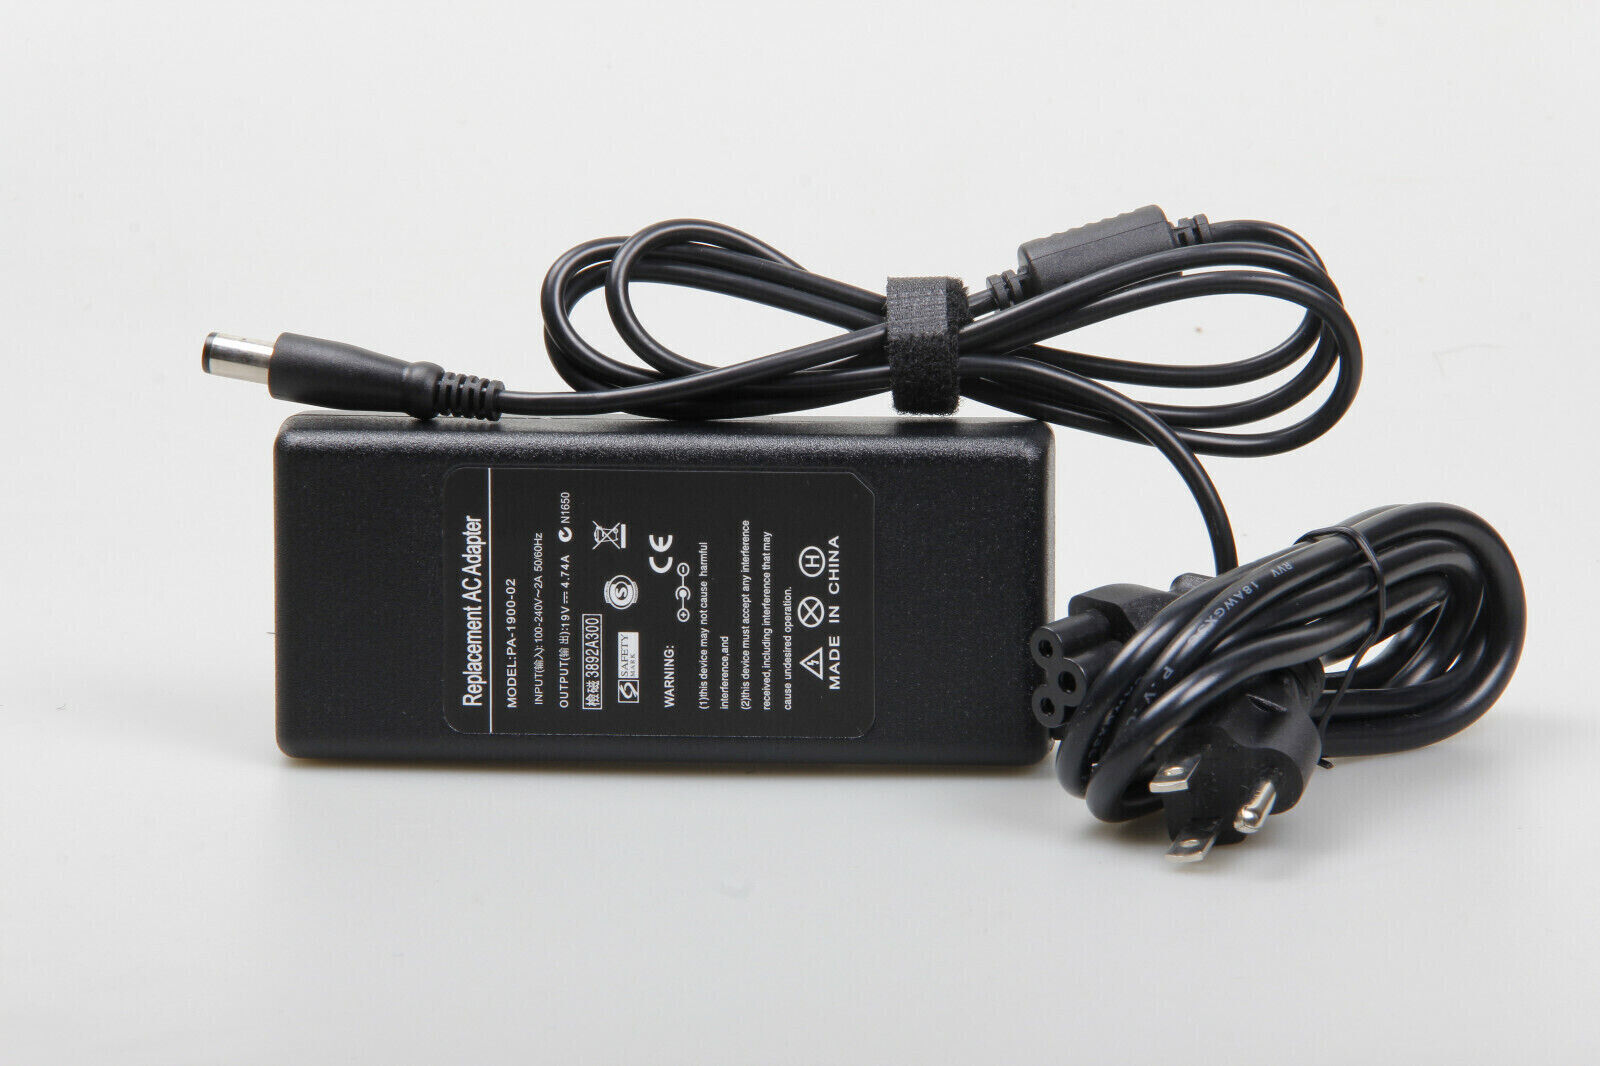 AC Adapter Charger For HP S01-aF0056 S01-aF0011 Slim Desktop PC Power Cord